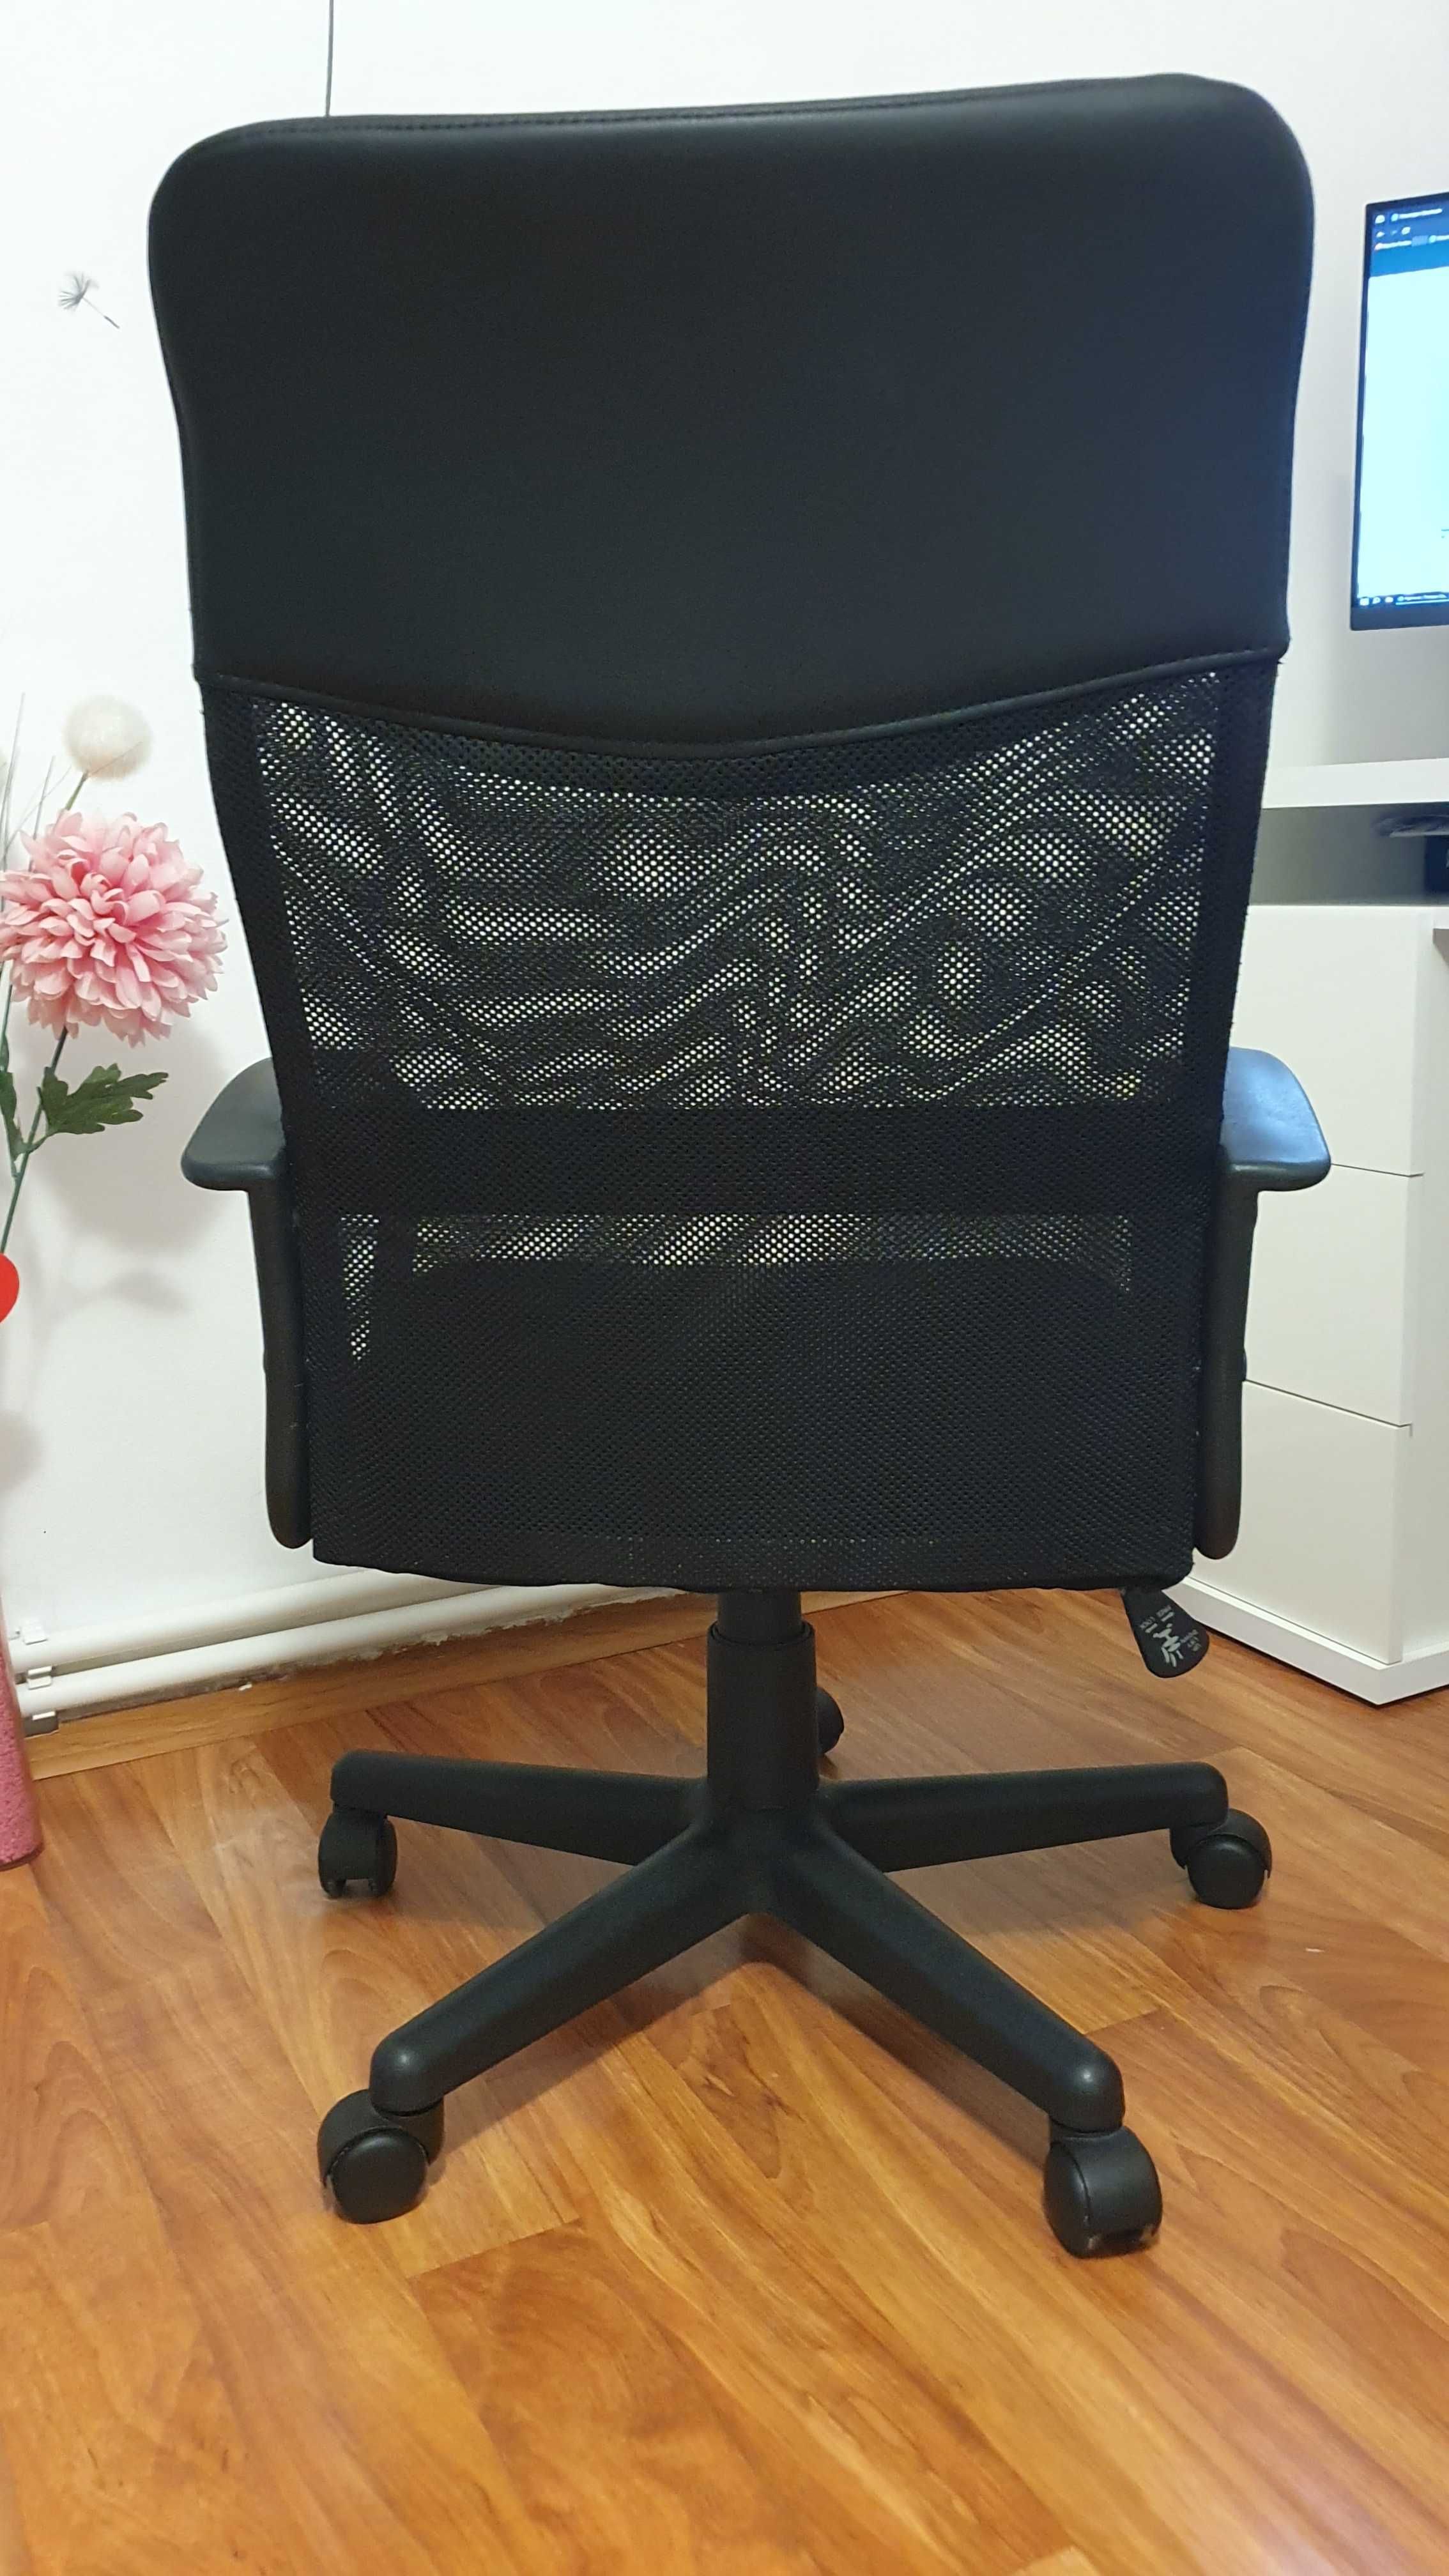 Vand scaun de birou, negru, utilizat